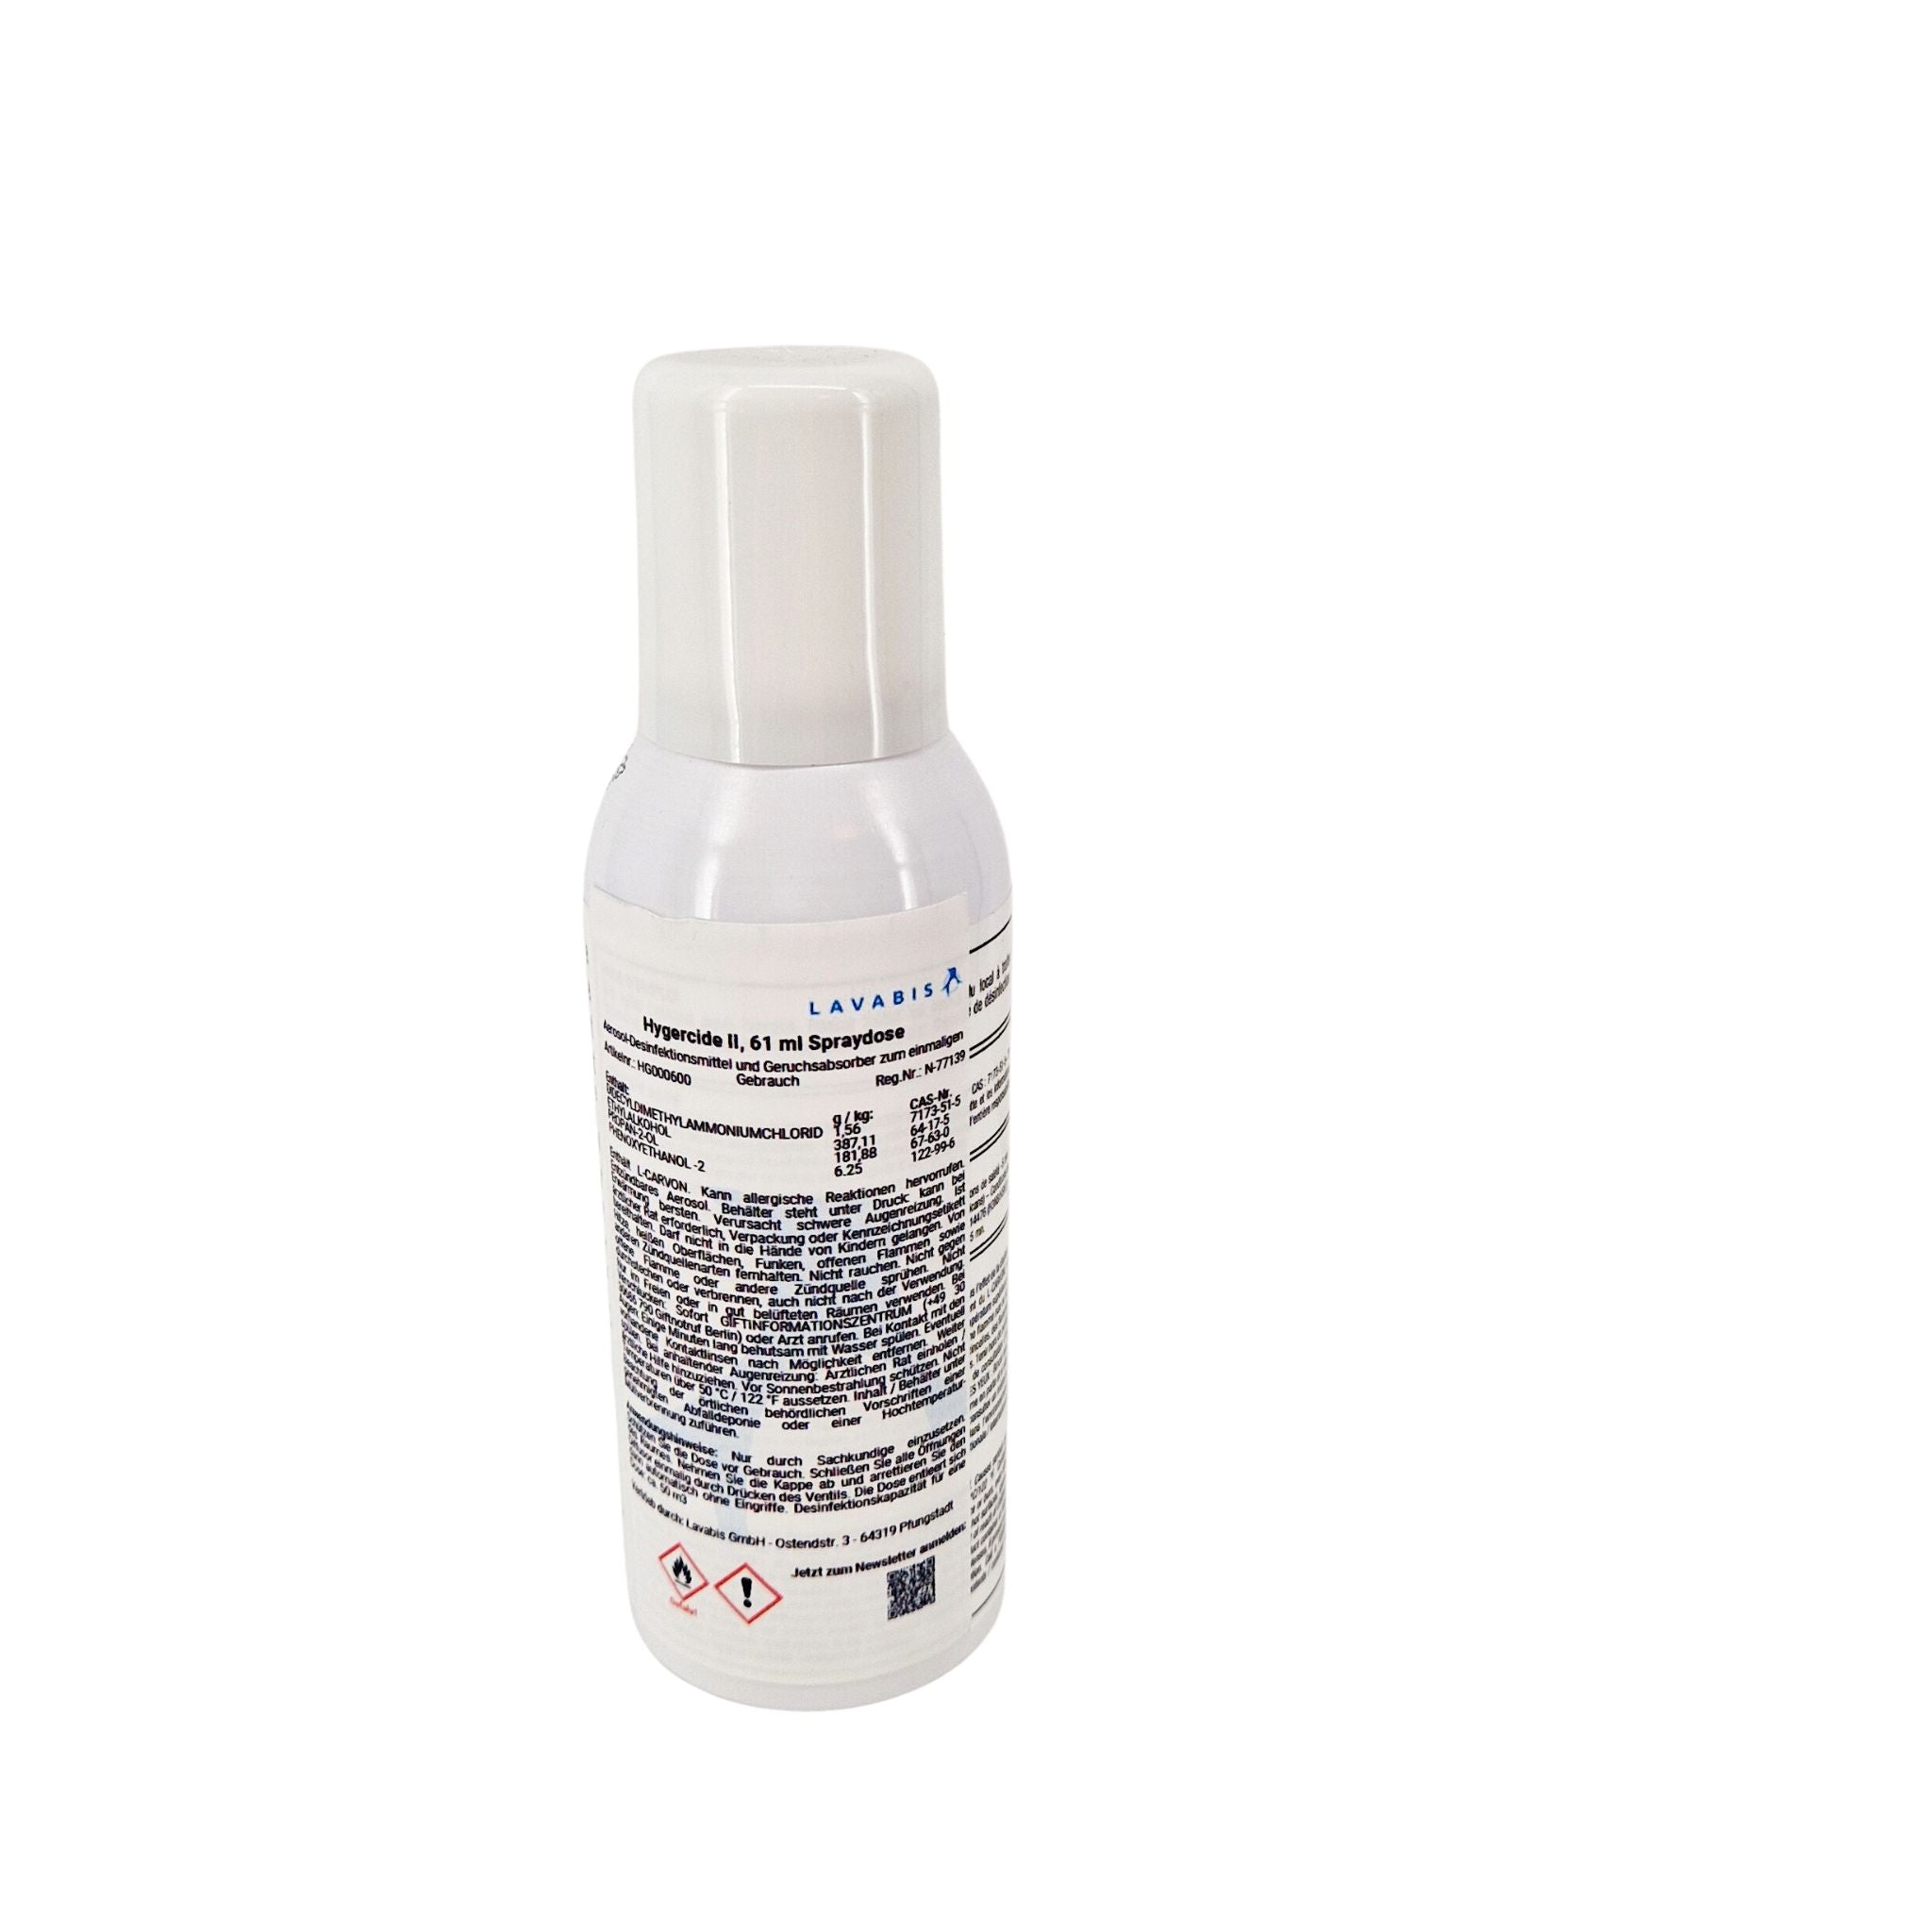 Hygercide II, 61 ml spray can - 0